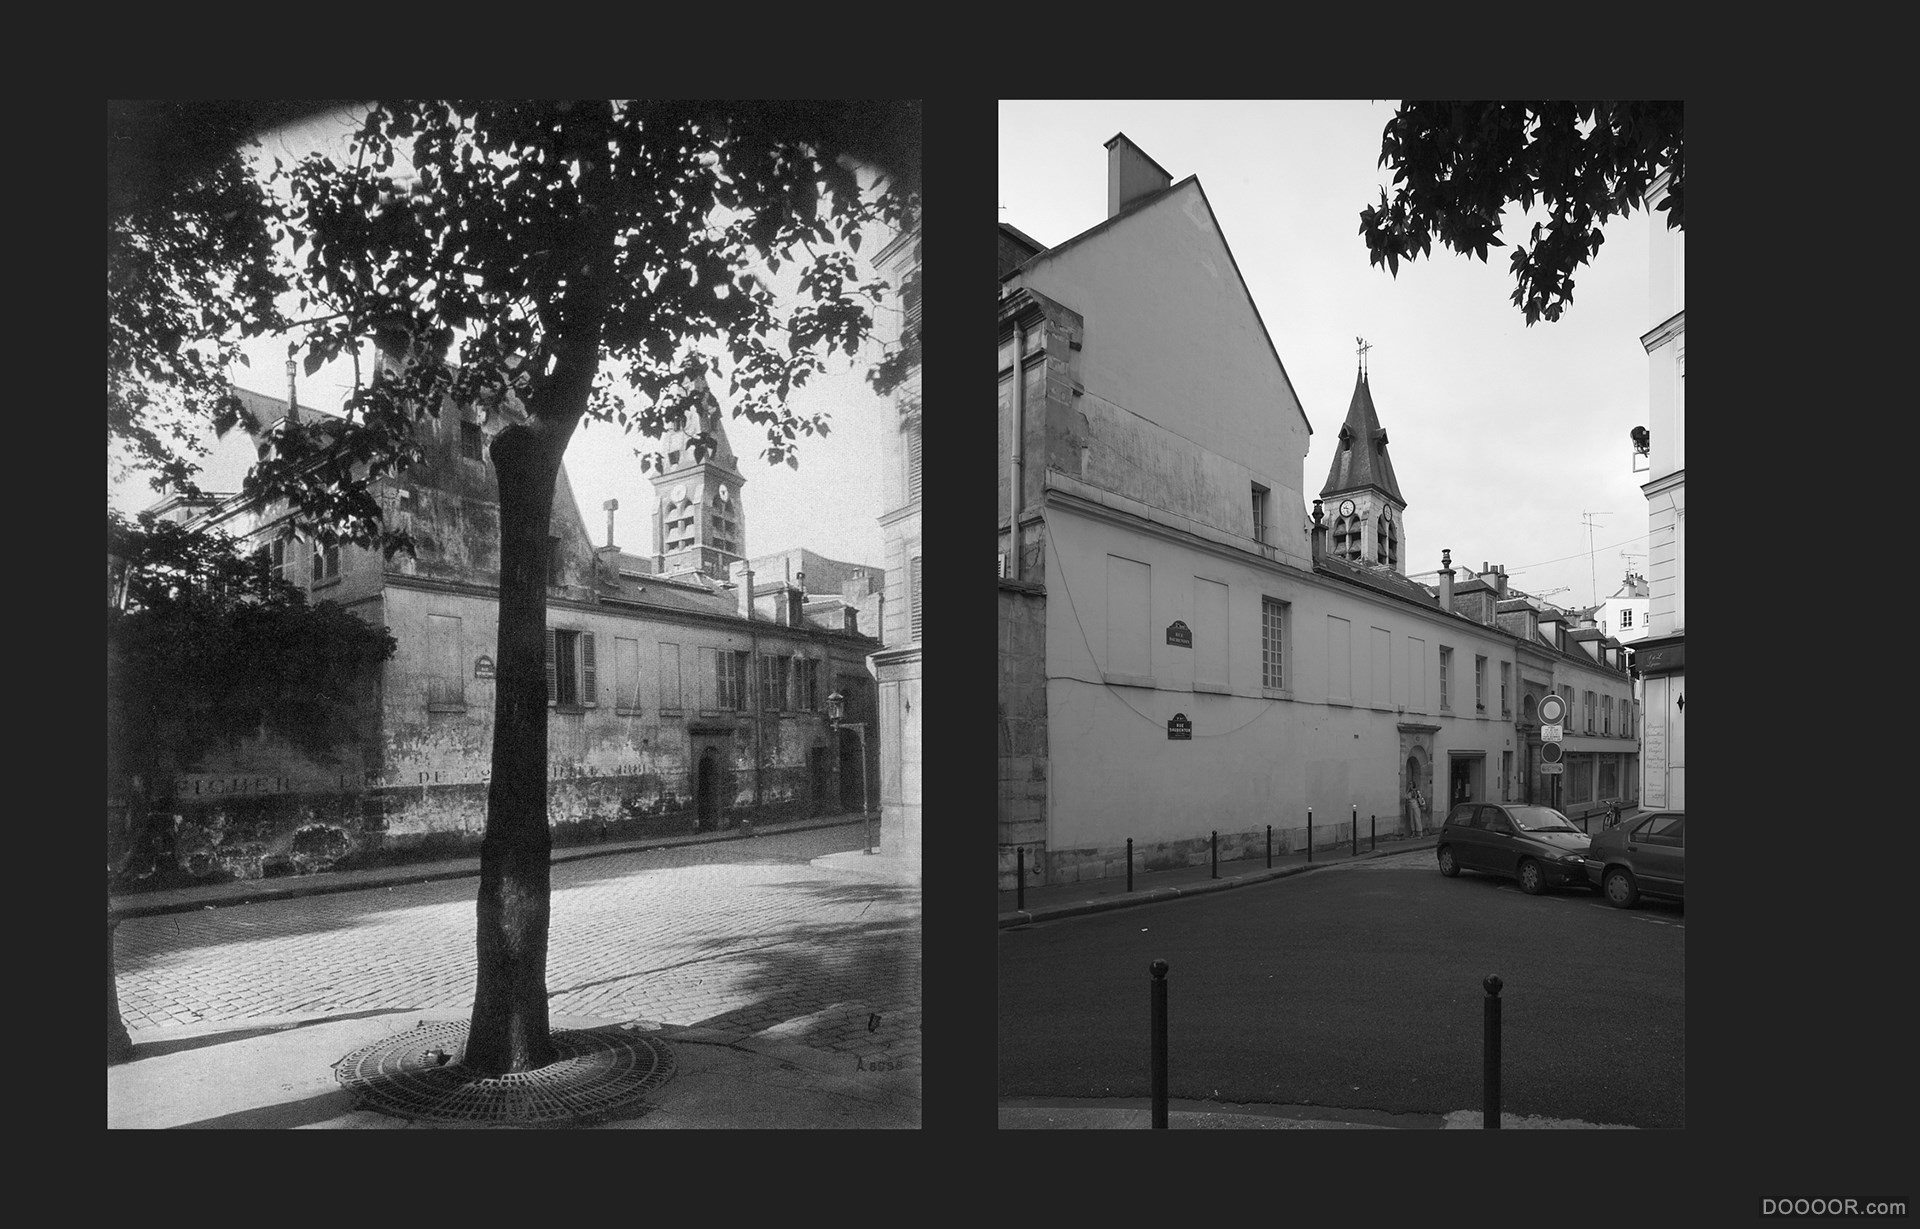 过去与现在-巴黎街头照片对比 [50P] (41).jpg